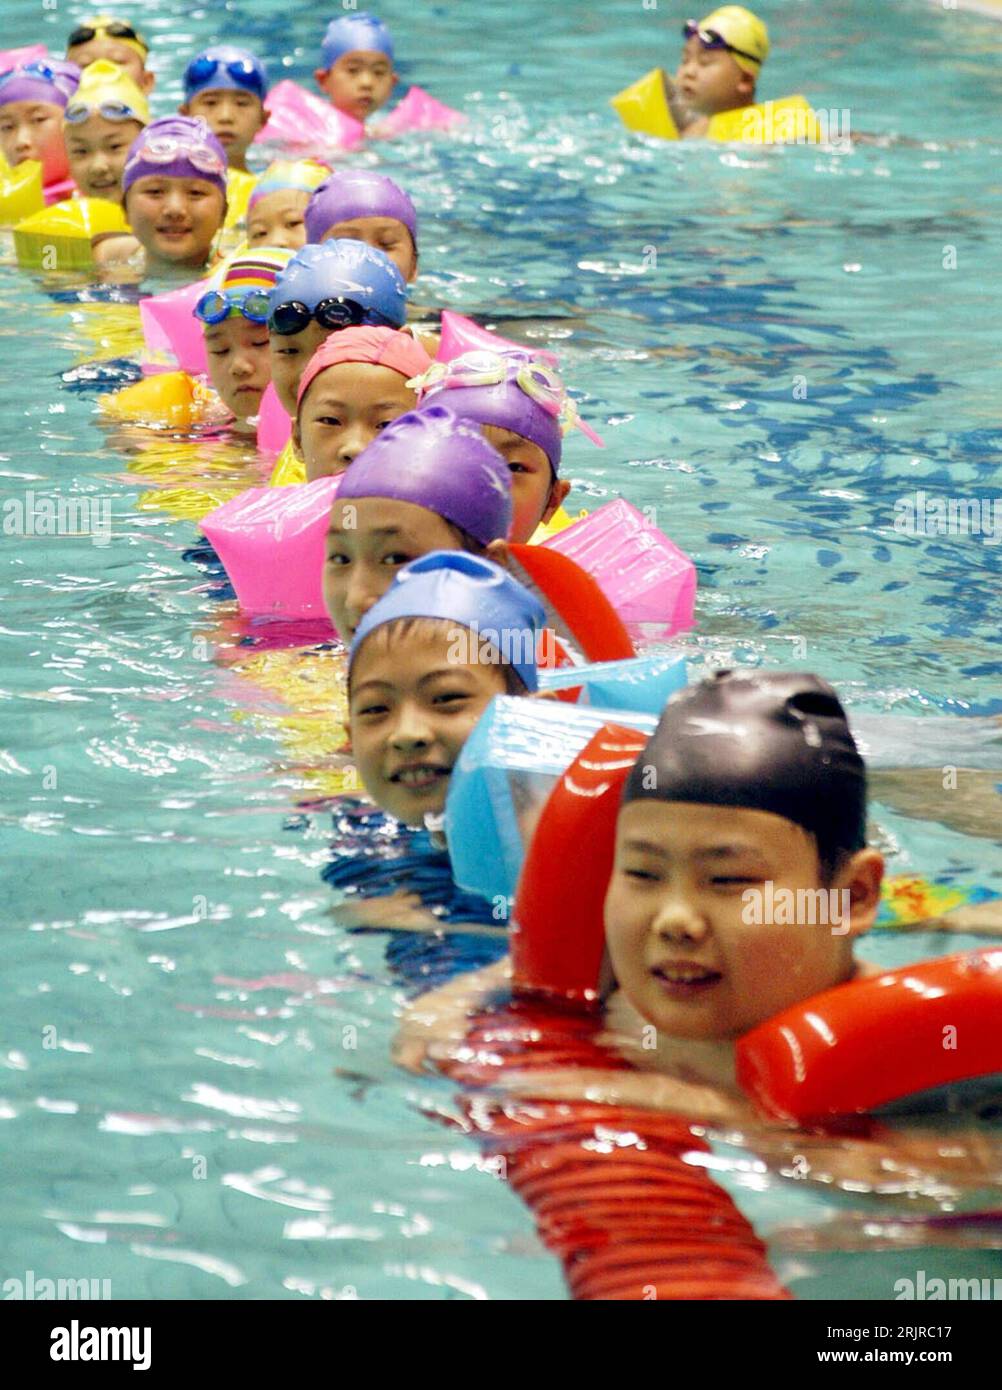 Bildnummer : 51368556 Datum : 18.07.2006 Copyright : imago/Xinhua Chinesische Schulkinder während eines Schwimmkurses in einer Schwimmhalle in Jinan PUBLICATIONxNOTxINxCHN, Personen , optimistisch ; 2006, Jinan, Kinder, Kinder, Mädchen, Chinois, Chinesen, Chinesin, Junge, Jungen, Jungs, schwimmen, schwimmend, schwimmt, lernen, lernend, lernt, Schwimmunterricht, Kurs, Kurse, Schwimmkurs, Schwimmkurse, Schulkind ; , hoch, Kbdig, Gruppenbild, Chine, , Schule, Bildung, Banque D'Images